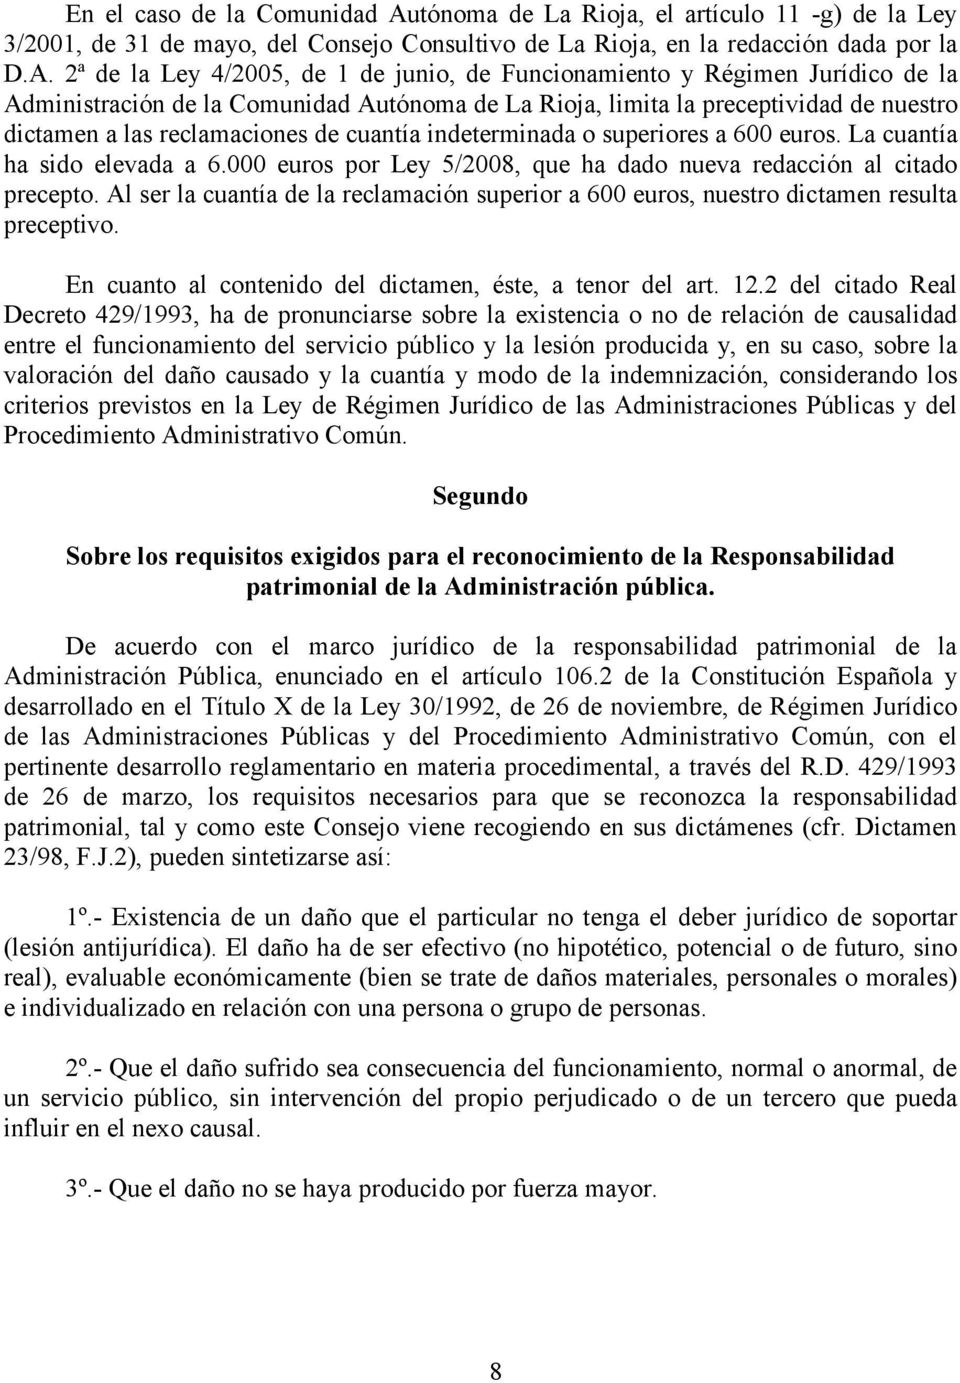 2ª de la Ley 4/2005, de 1 de junio, de Funcionamiento y Régimen Jurídico de la Administración de la Comunidad Autónoma de La Rioja, limita la preceptividad de nuestro dictamen a las reclamaciones de